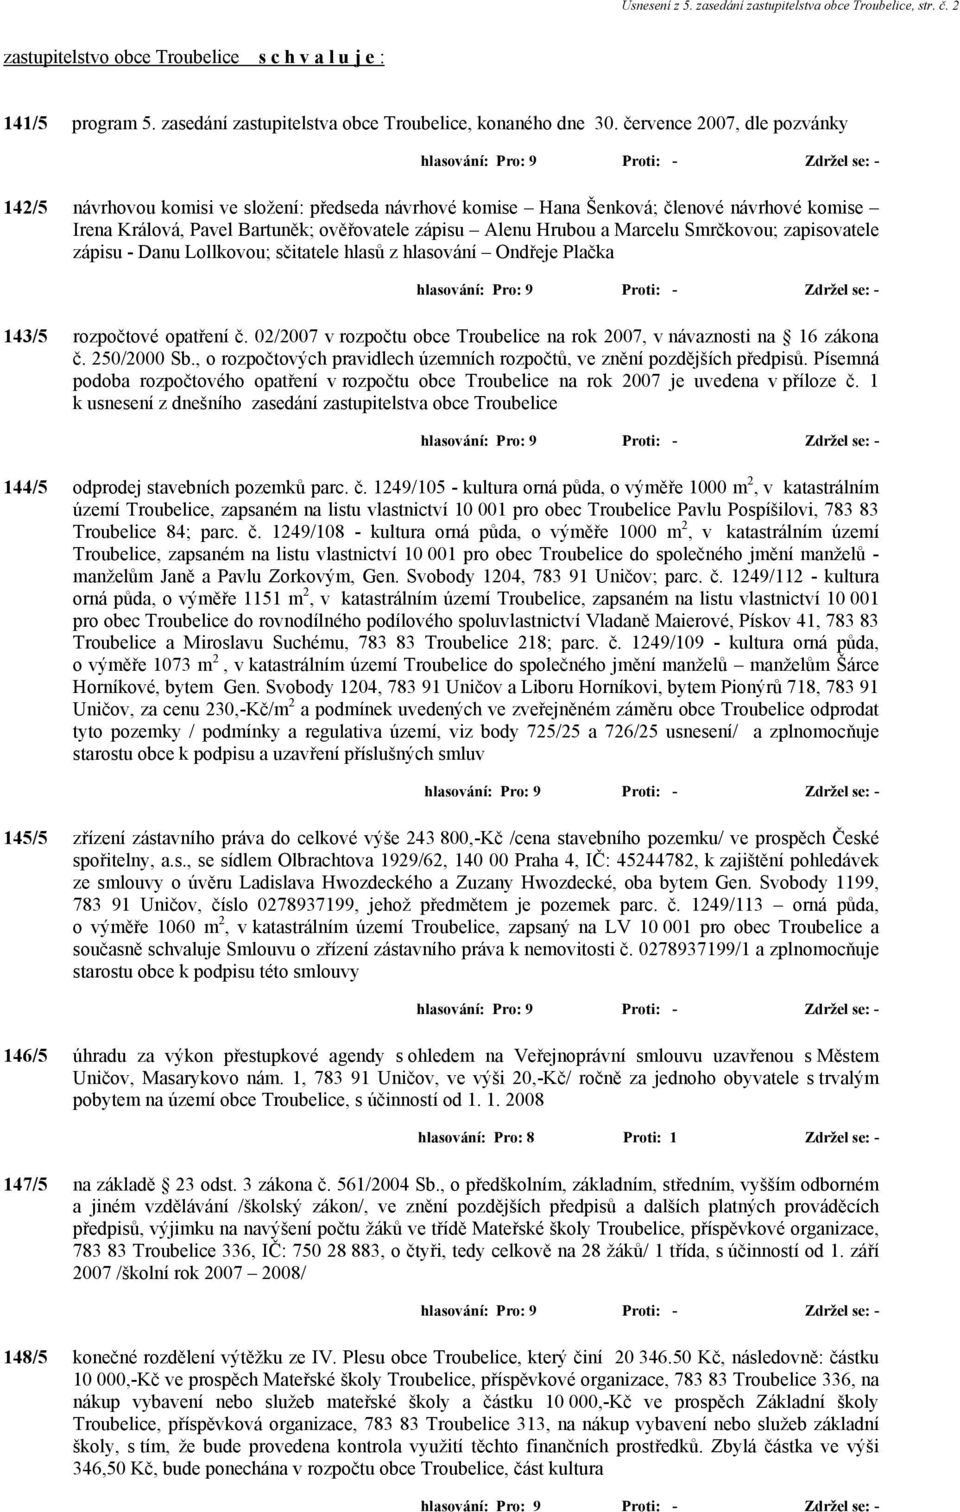 Smrčkovou; zapisovatele zápisu - Danu Lollkovou; sčitatele hlasů z hlasování Ondřeje Plačka 143/5 rozpočtové opatření č. 02/2007 v rozpočtu obce Troubelice na rok 2007, v návaznosti na 16 zákona č.